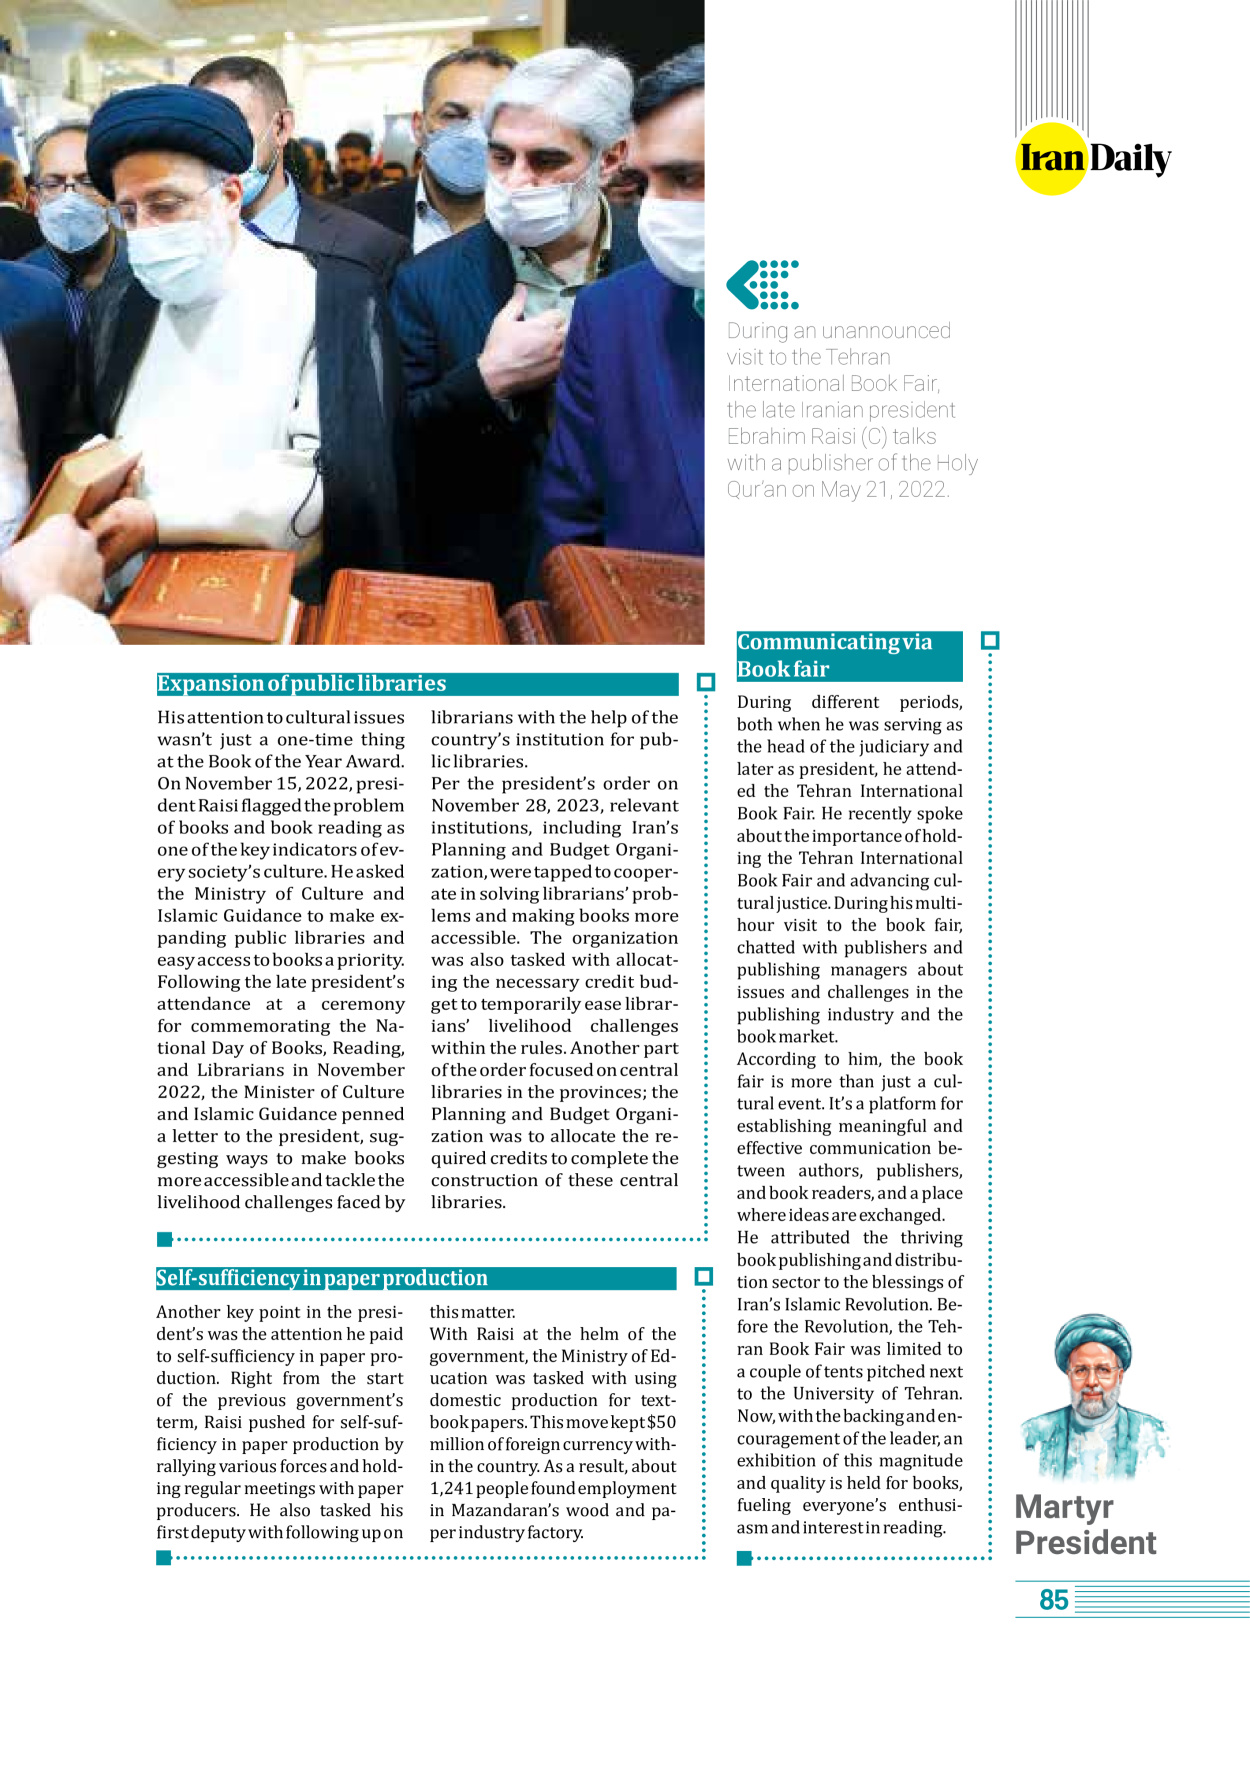 روزنامه ایران - ویژه نامه وِزه نامه چهلم شهید رییسی( انگلیسی) - ۱۷ تیر ۱۴۰۳ - صفحه ۸۵